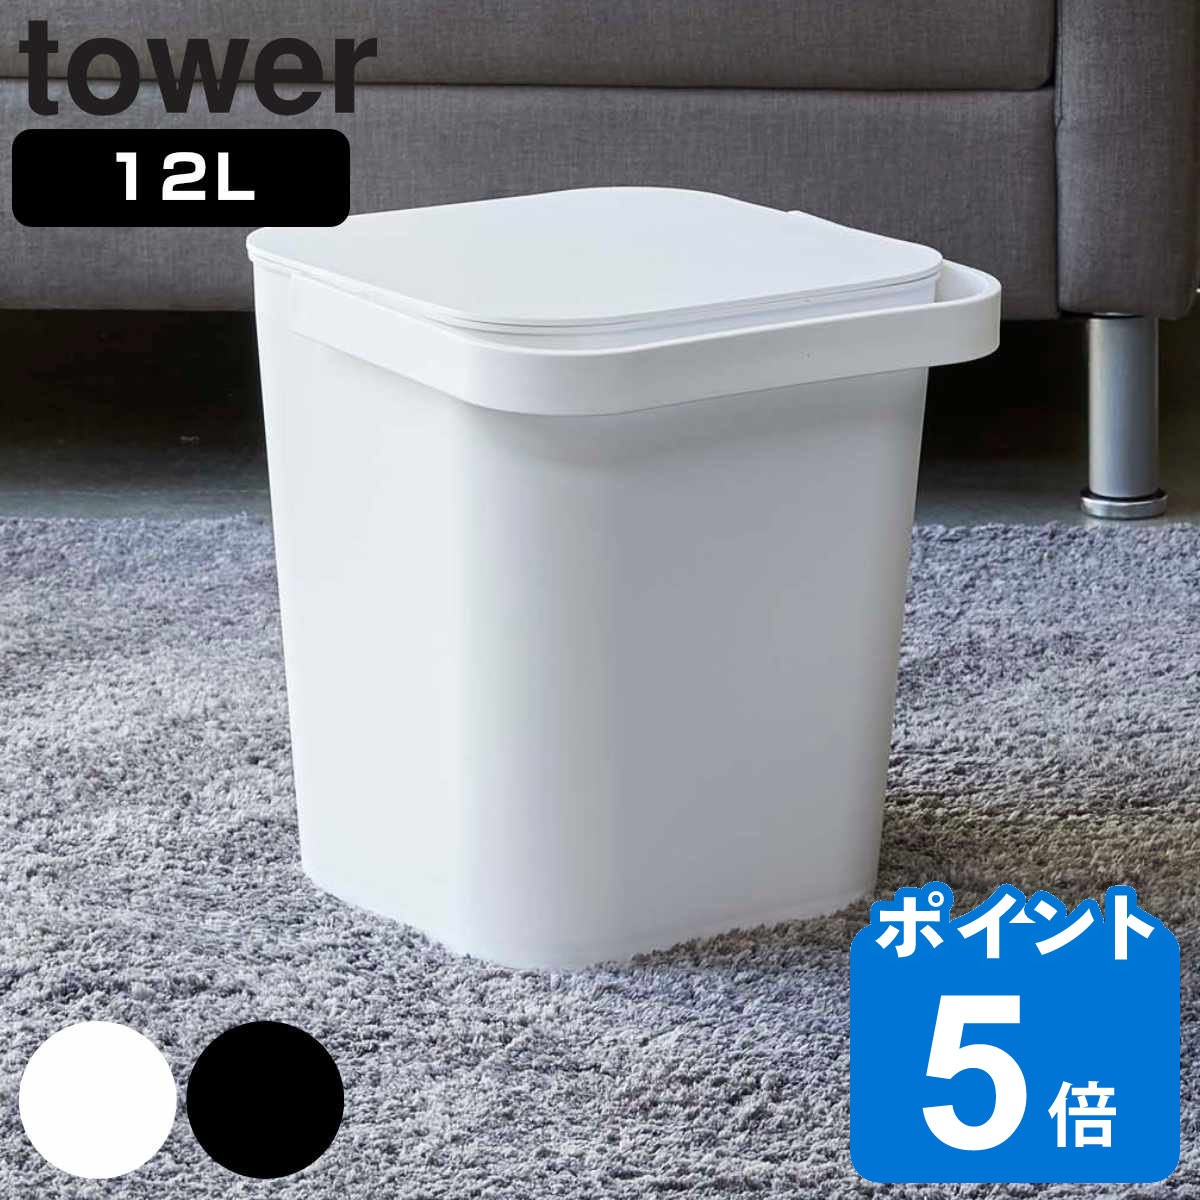 tower t^toPc ^[ 12L